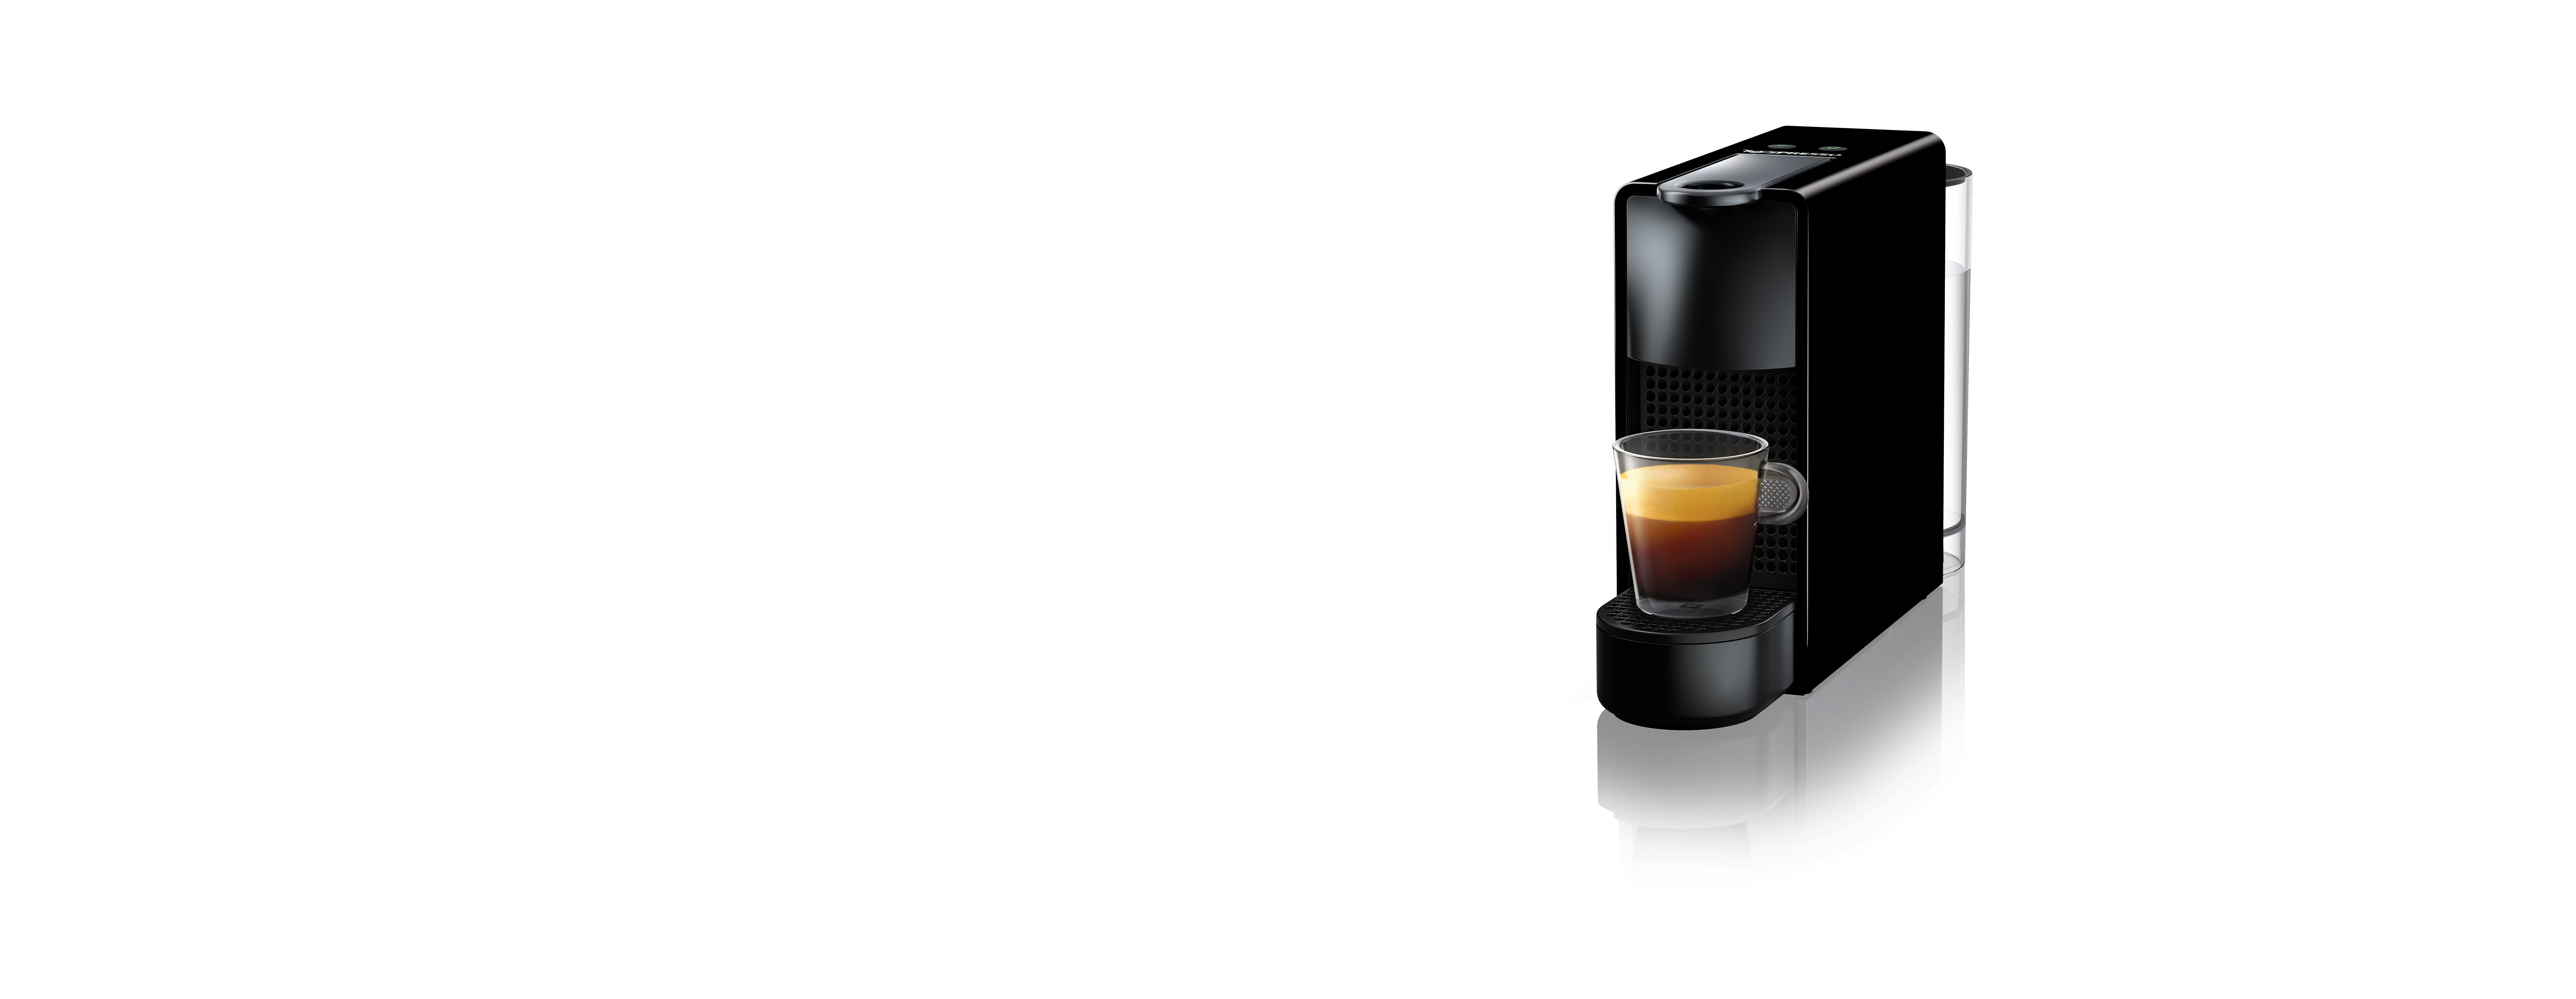 Essenza Mini C30 Black | Coffee Machine | Nespresso Korea